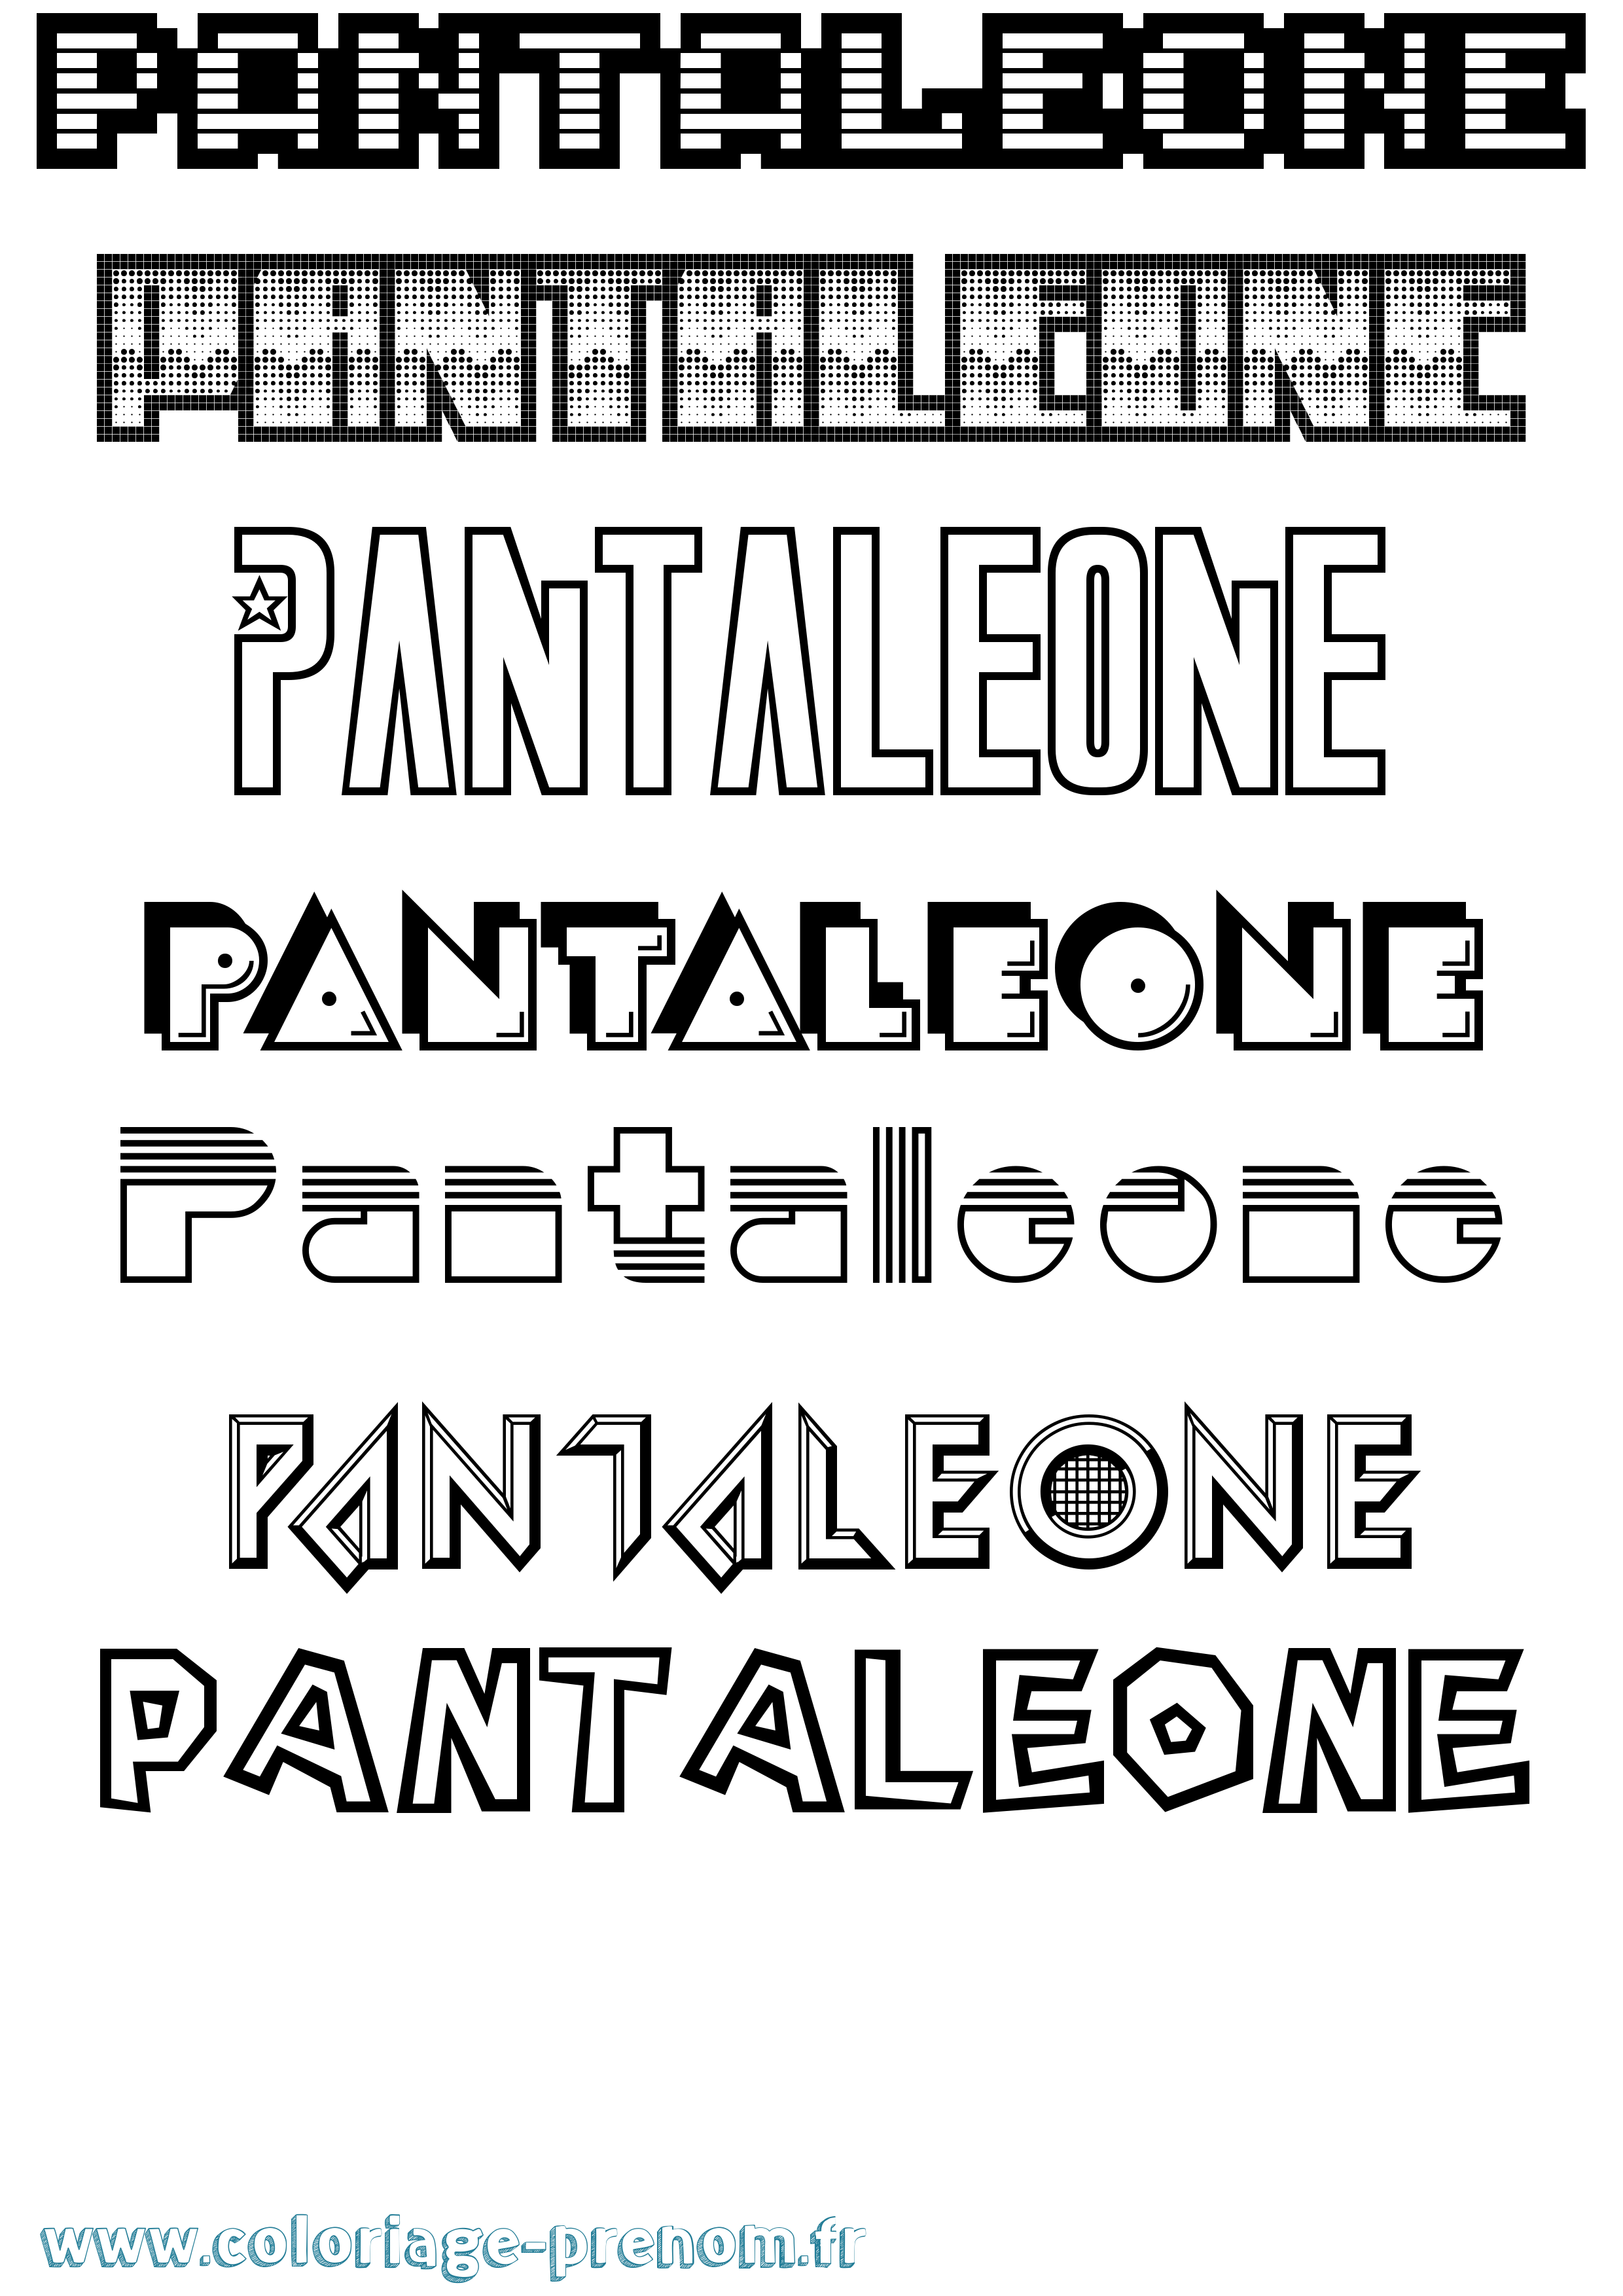 Coloriage prénom Pantaleone Jeux Vidéos